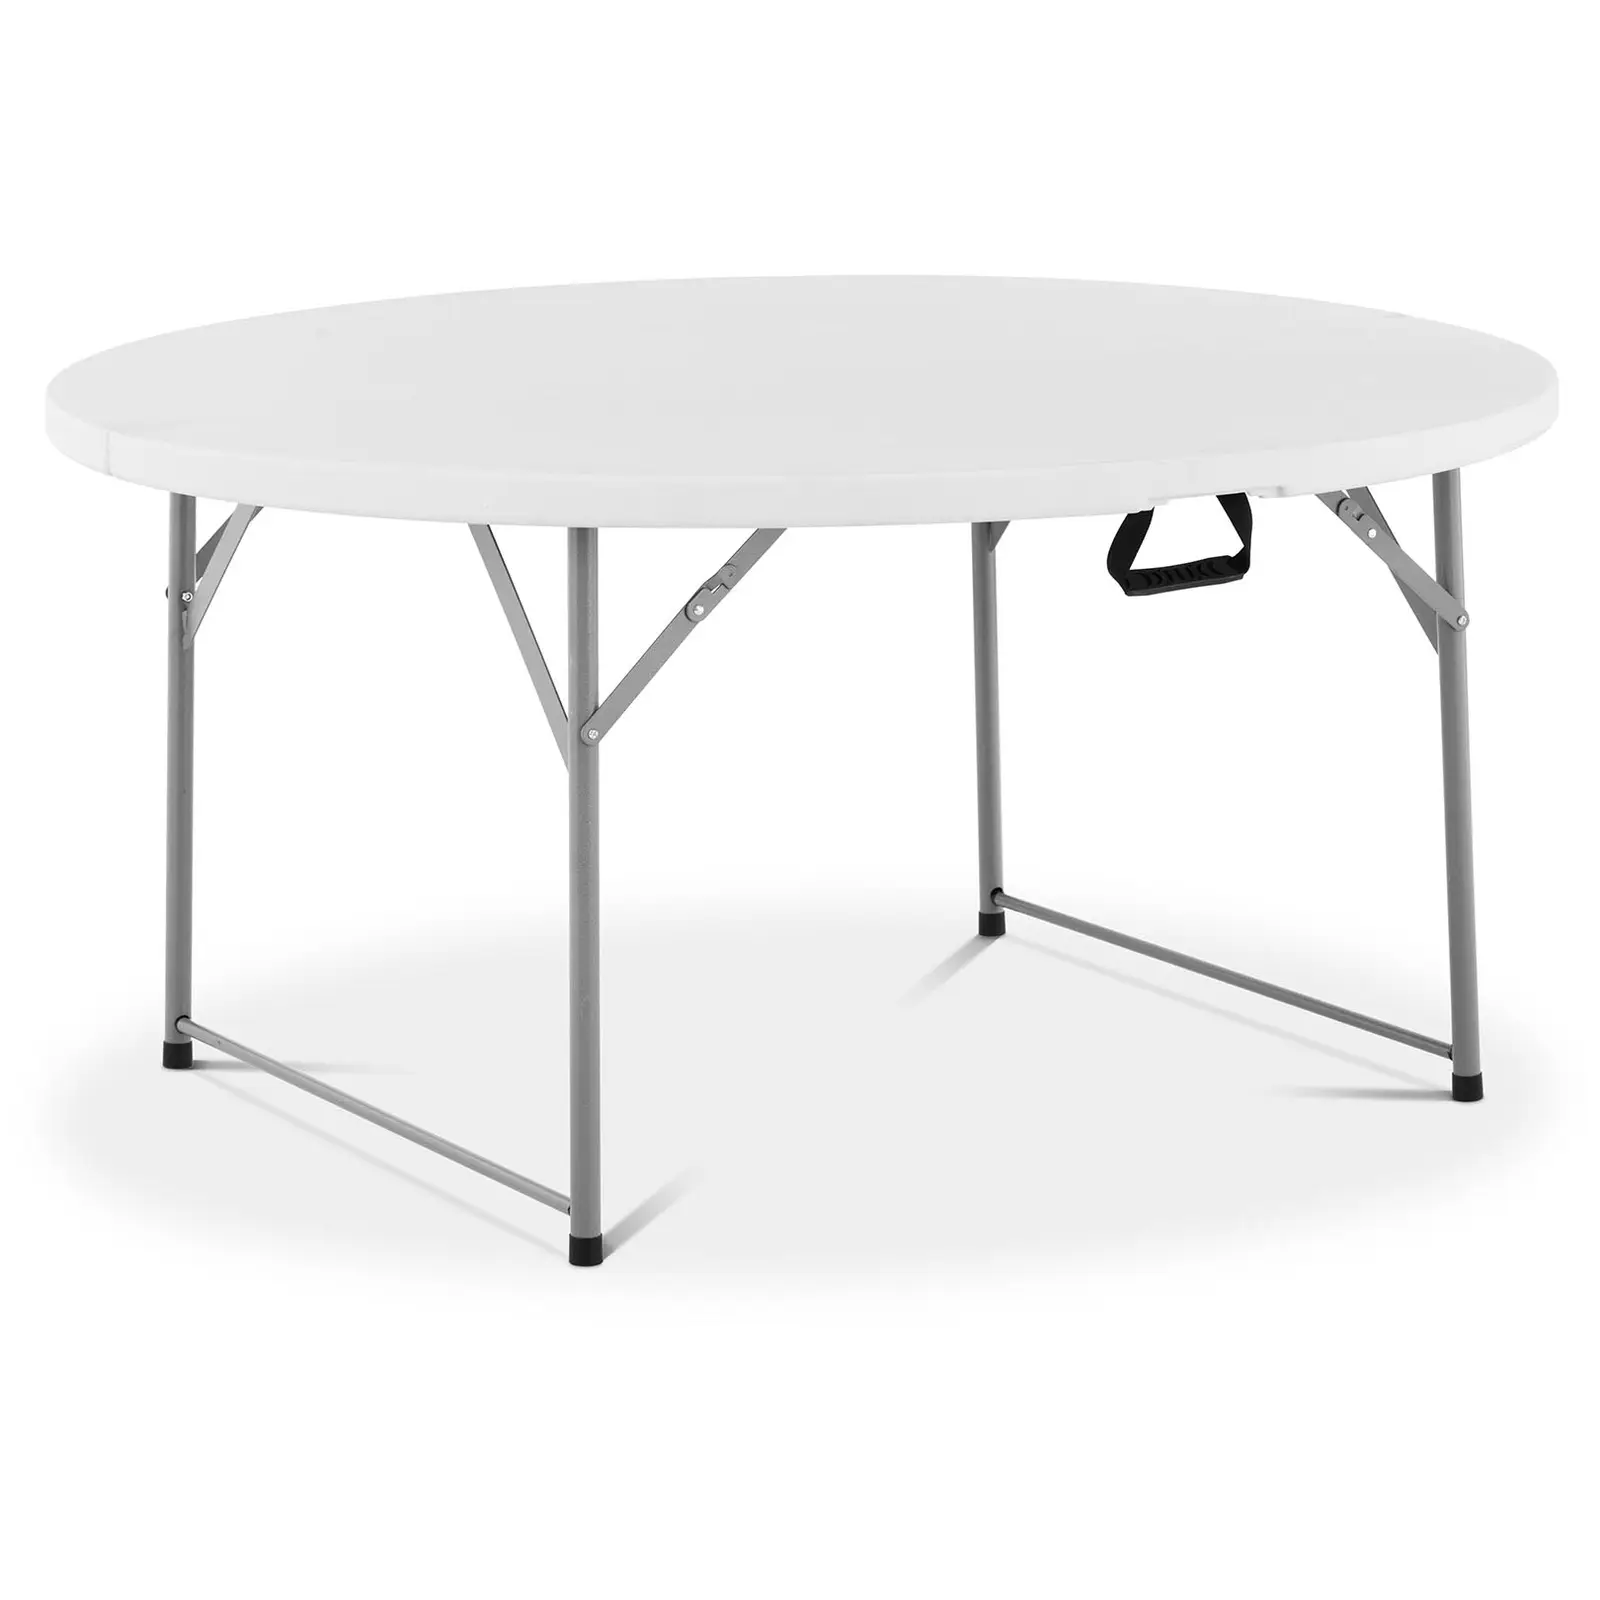 Table pliante - Ø 1 500 x 740 mm - Royal Catering - 150 kg - Intérieur/extérieur - Whitehe